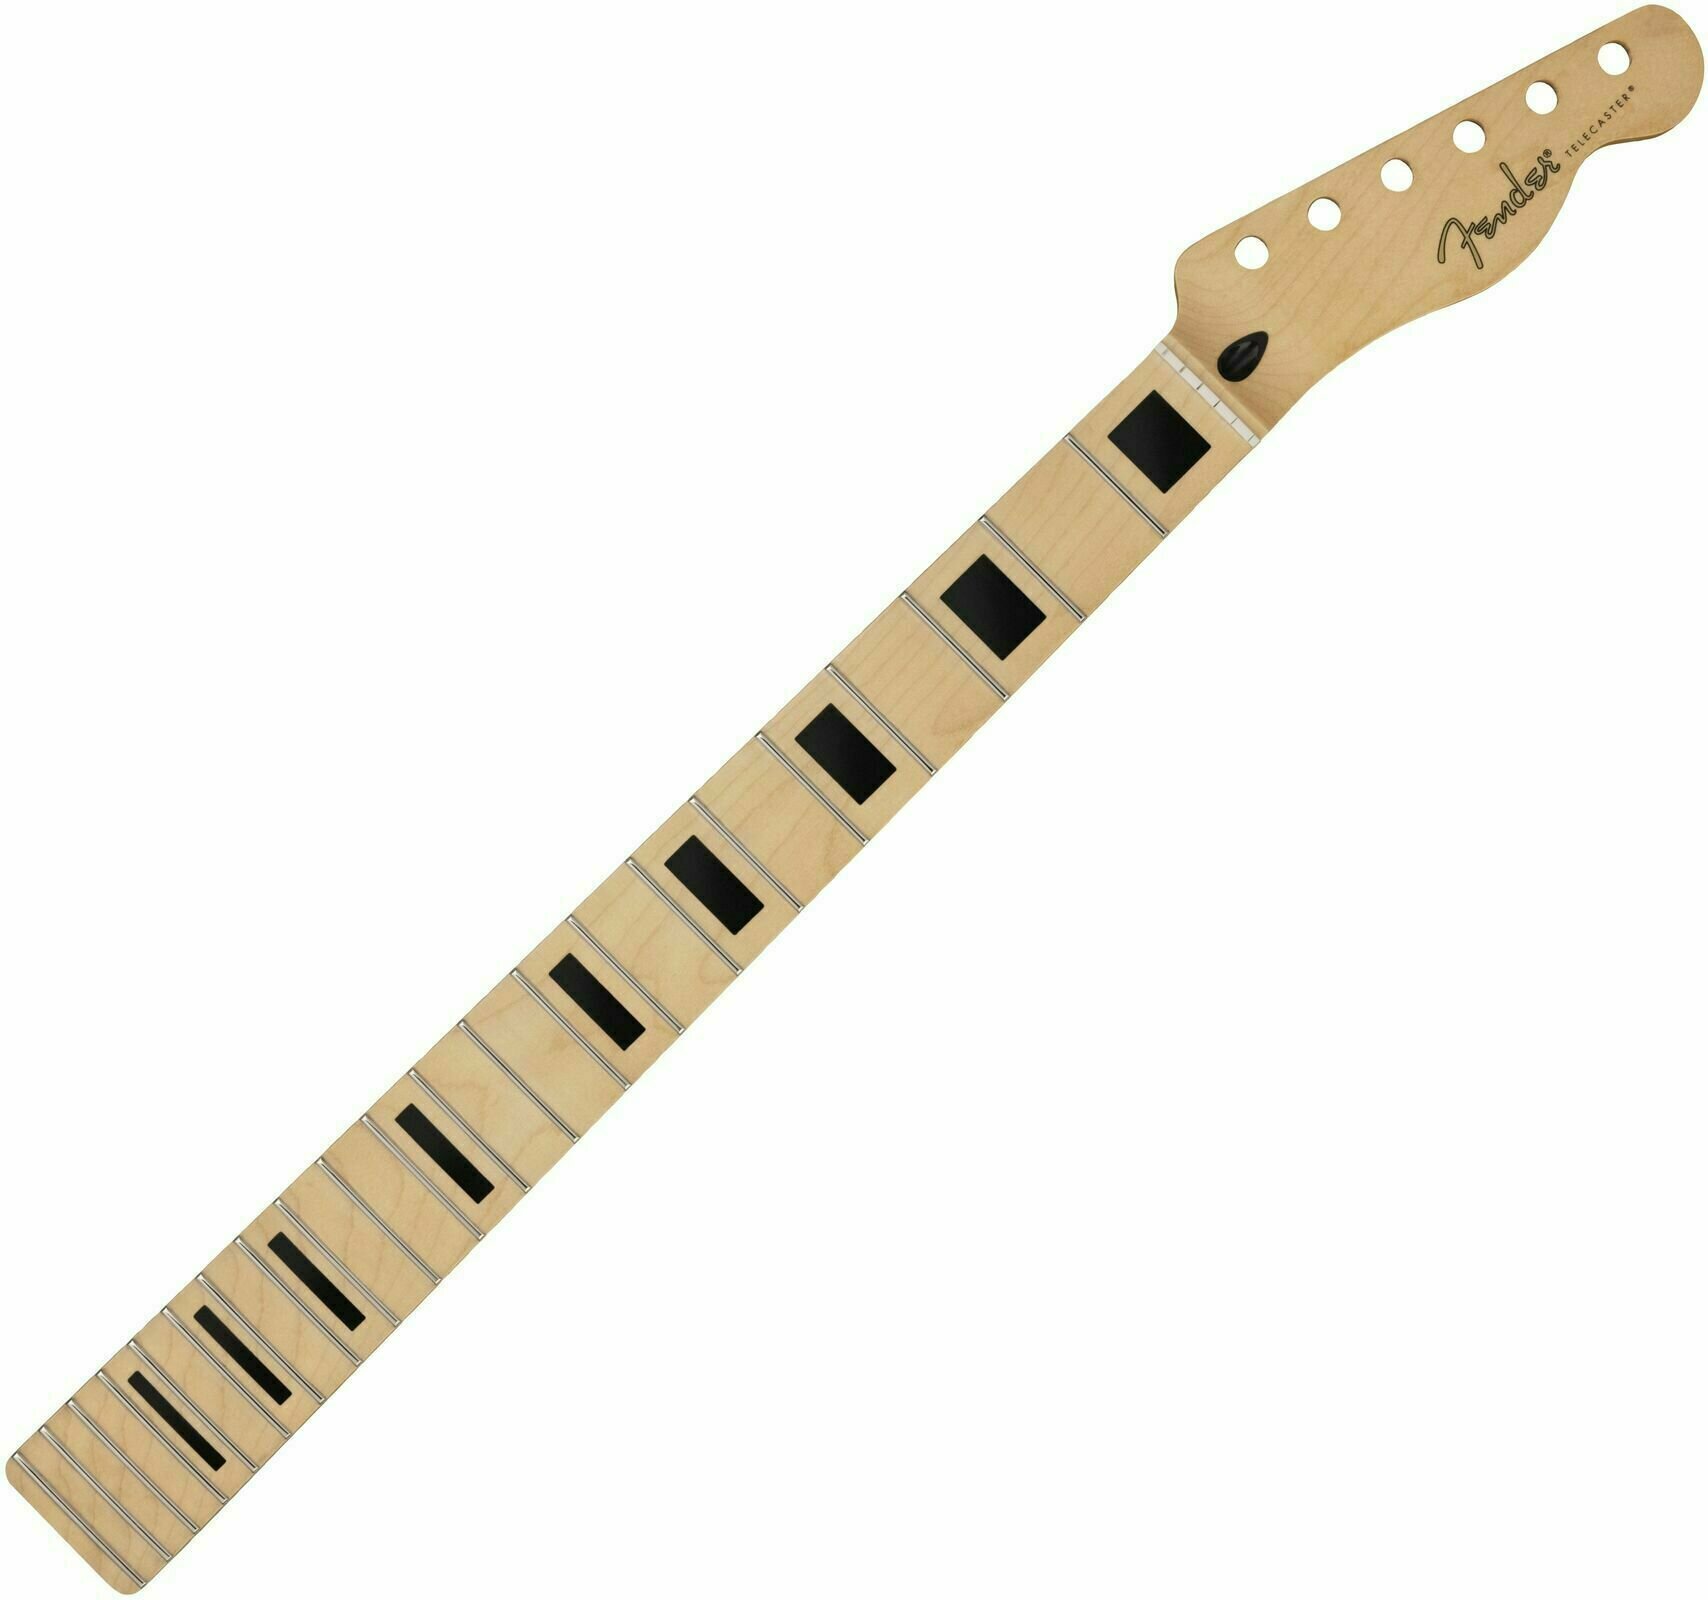 Hals für Gitarre Fender Player Series Telecaster Neck Block Inlays Maple 22 Ahorn Hals für Gitarre